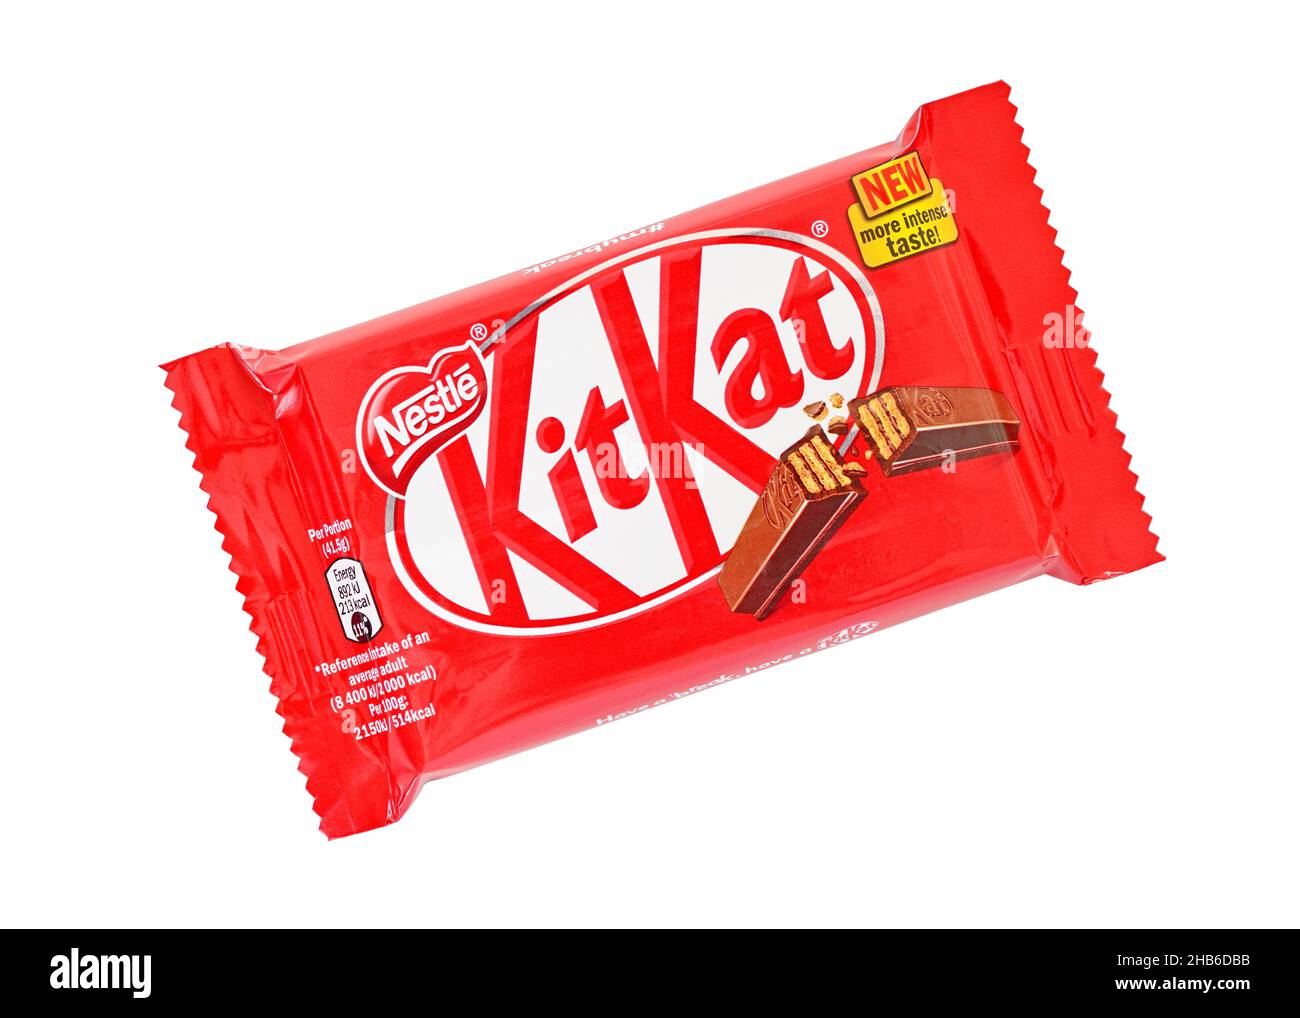 KitKat Kit Kat Chocolate Covered Wafer Bar, United Kingdom Stock Photo